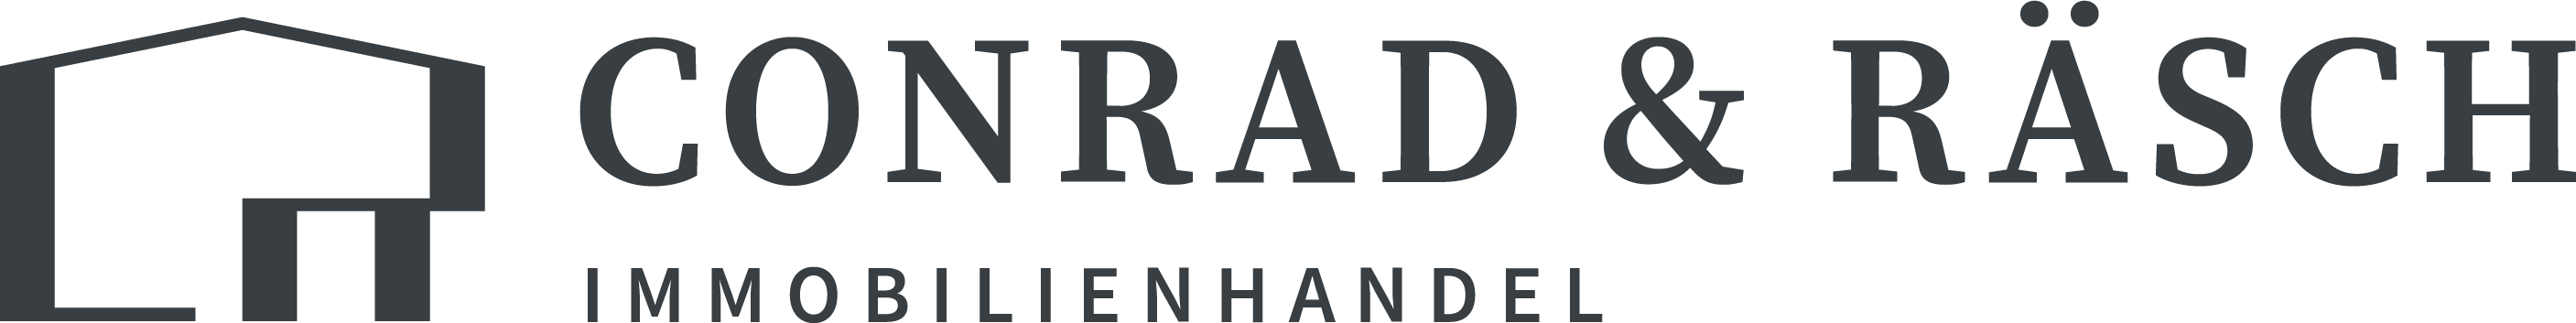 Conrad & Räsch Immobilienhandel Logo mit den Buchstaben C & R die ein Haus symbolisieren